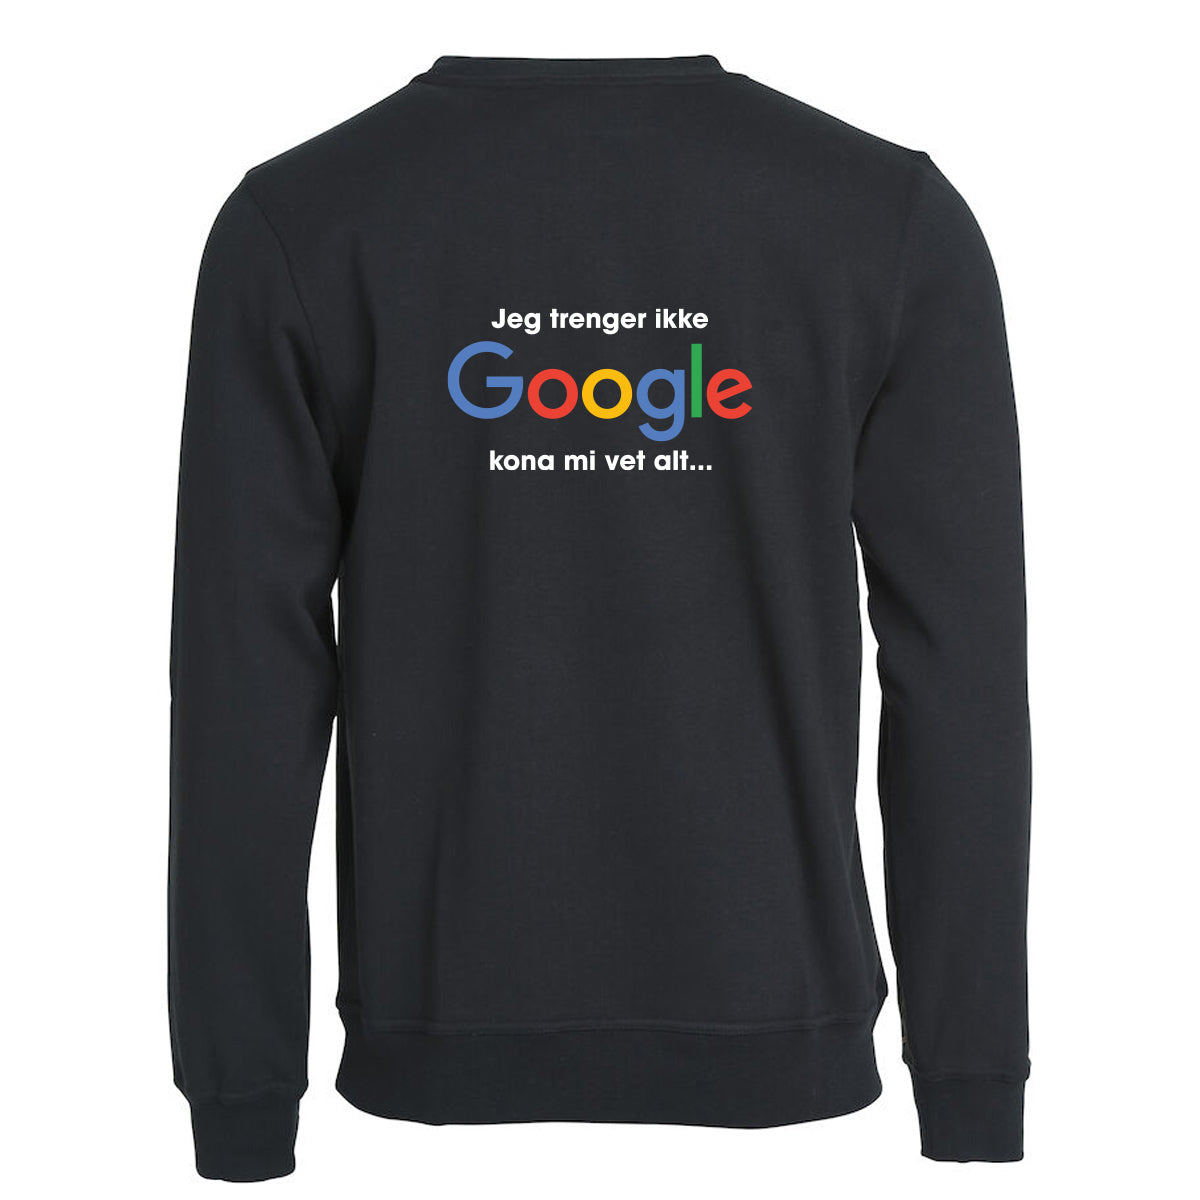 Trenger ikke Google - genser